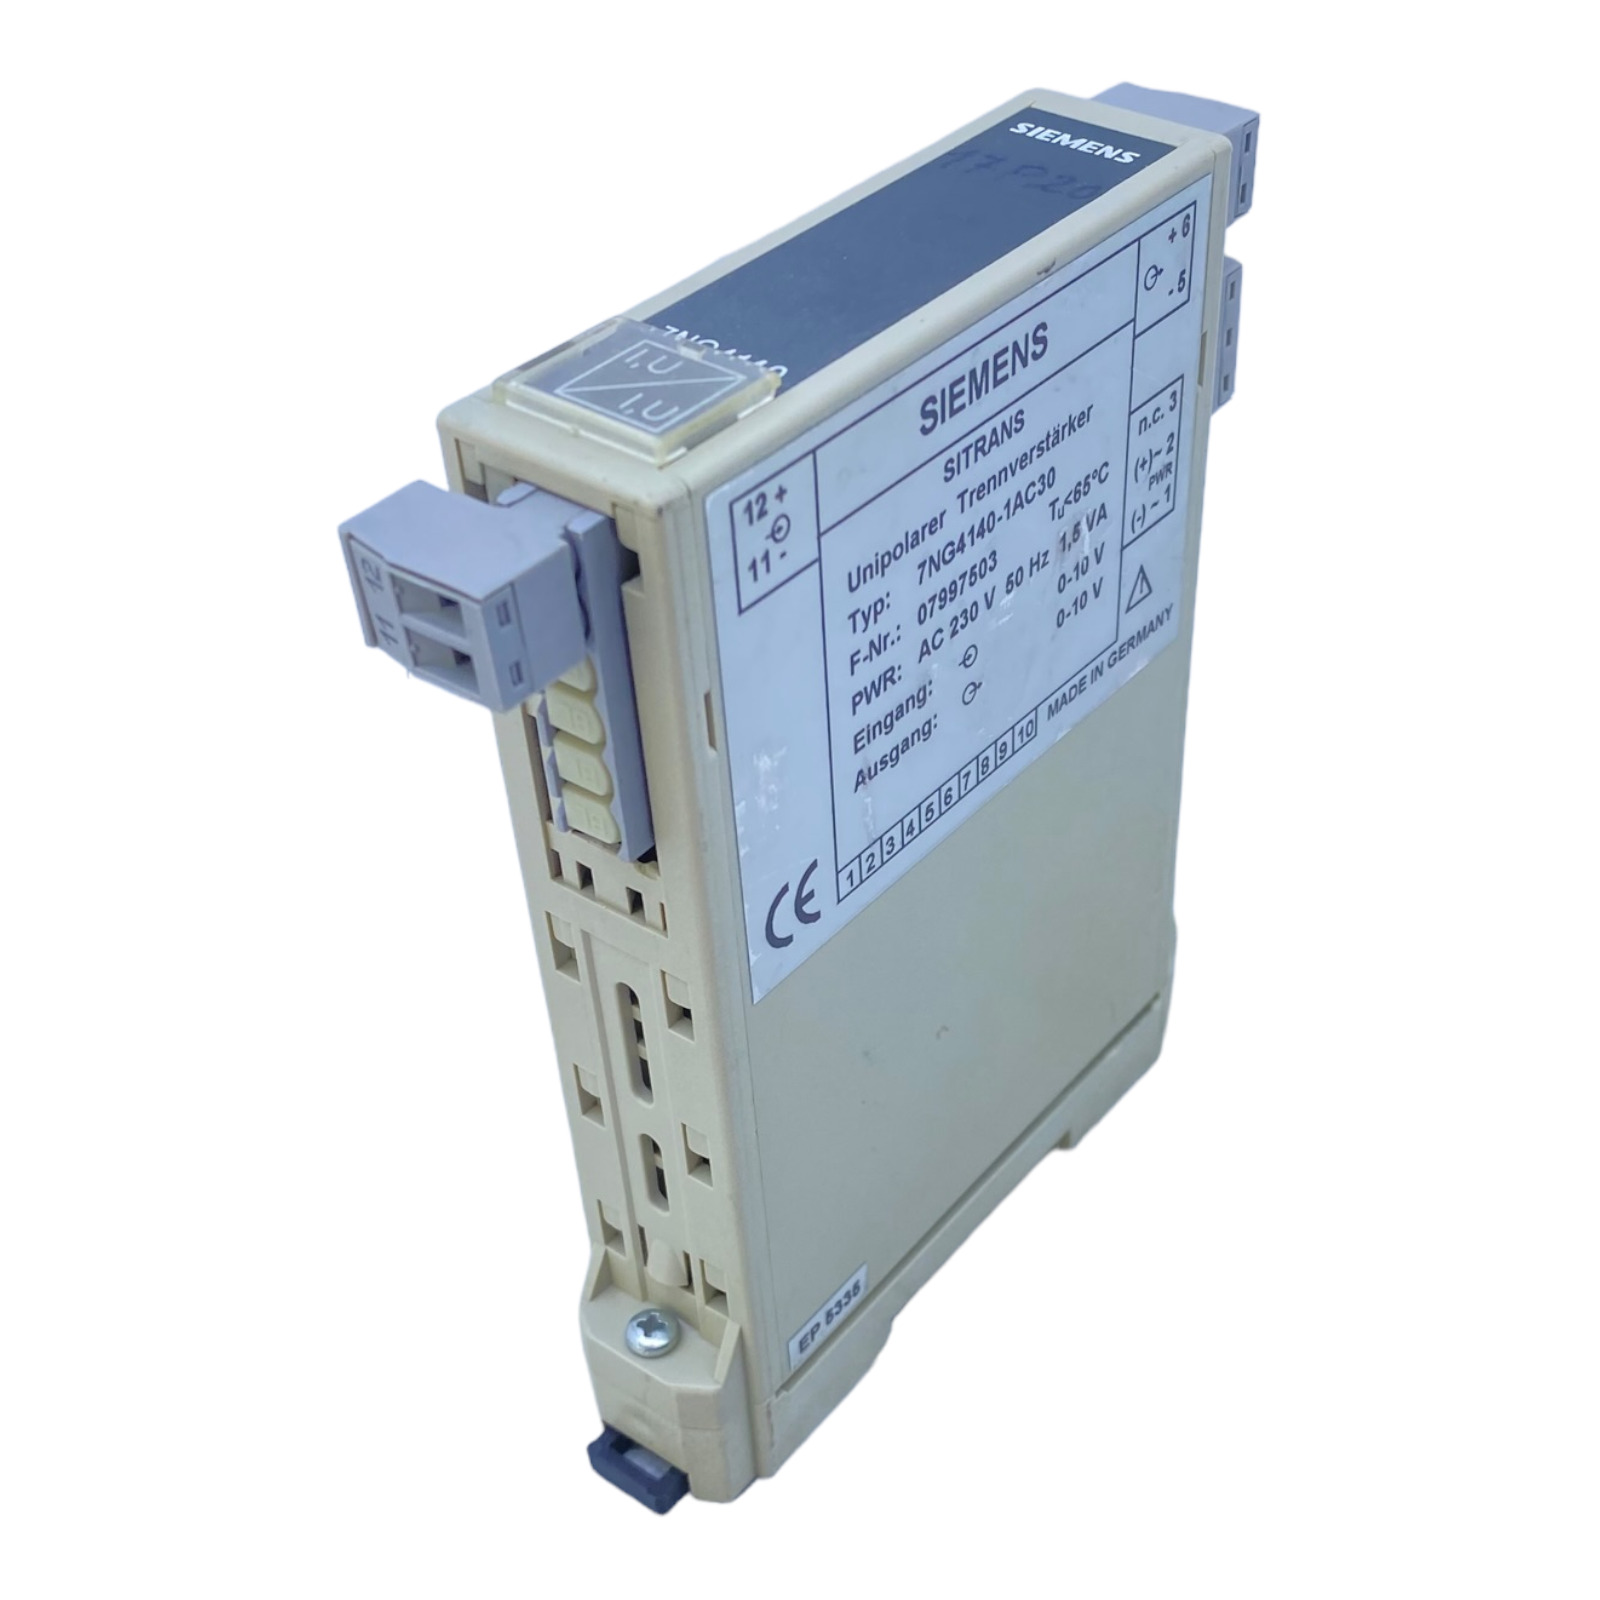 Siemens 7NG4140-1AC30 Separator Amplifier SITRANS Unipolar 230V AC 50Hz 1.5VA